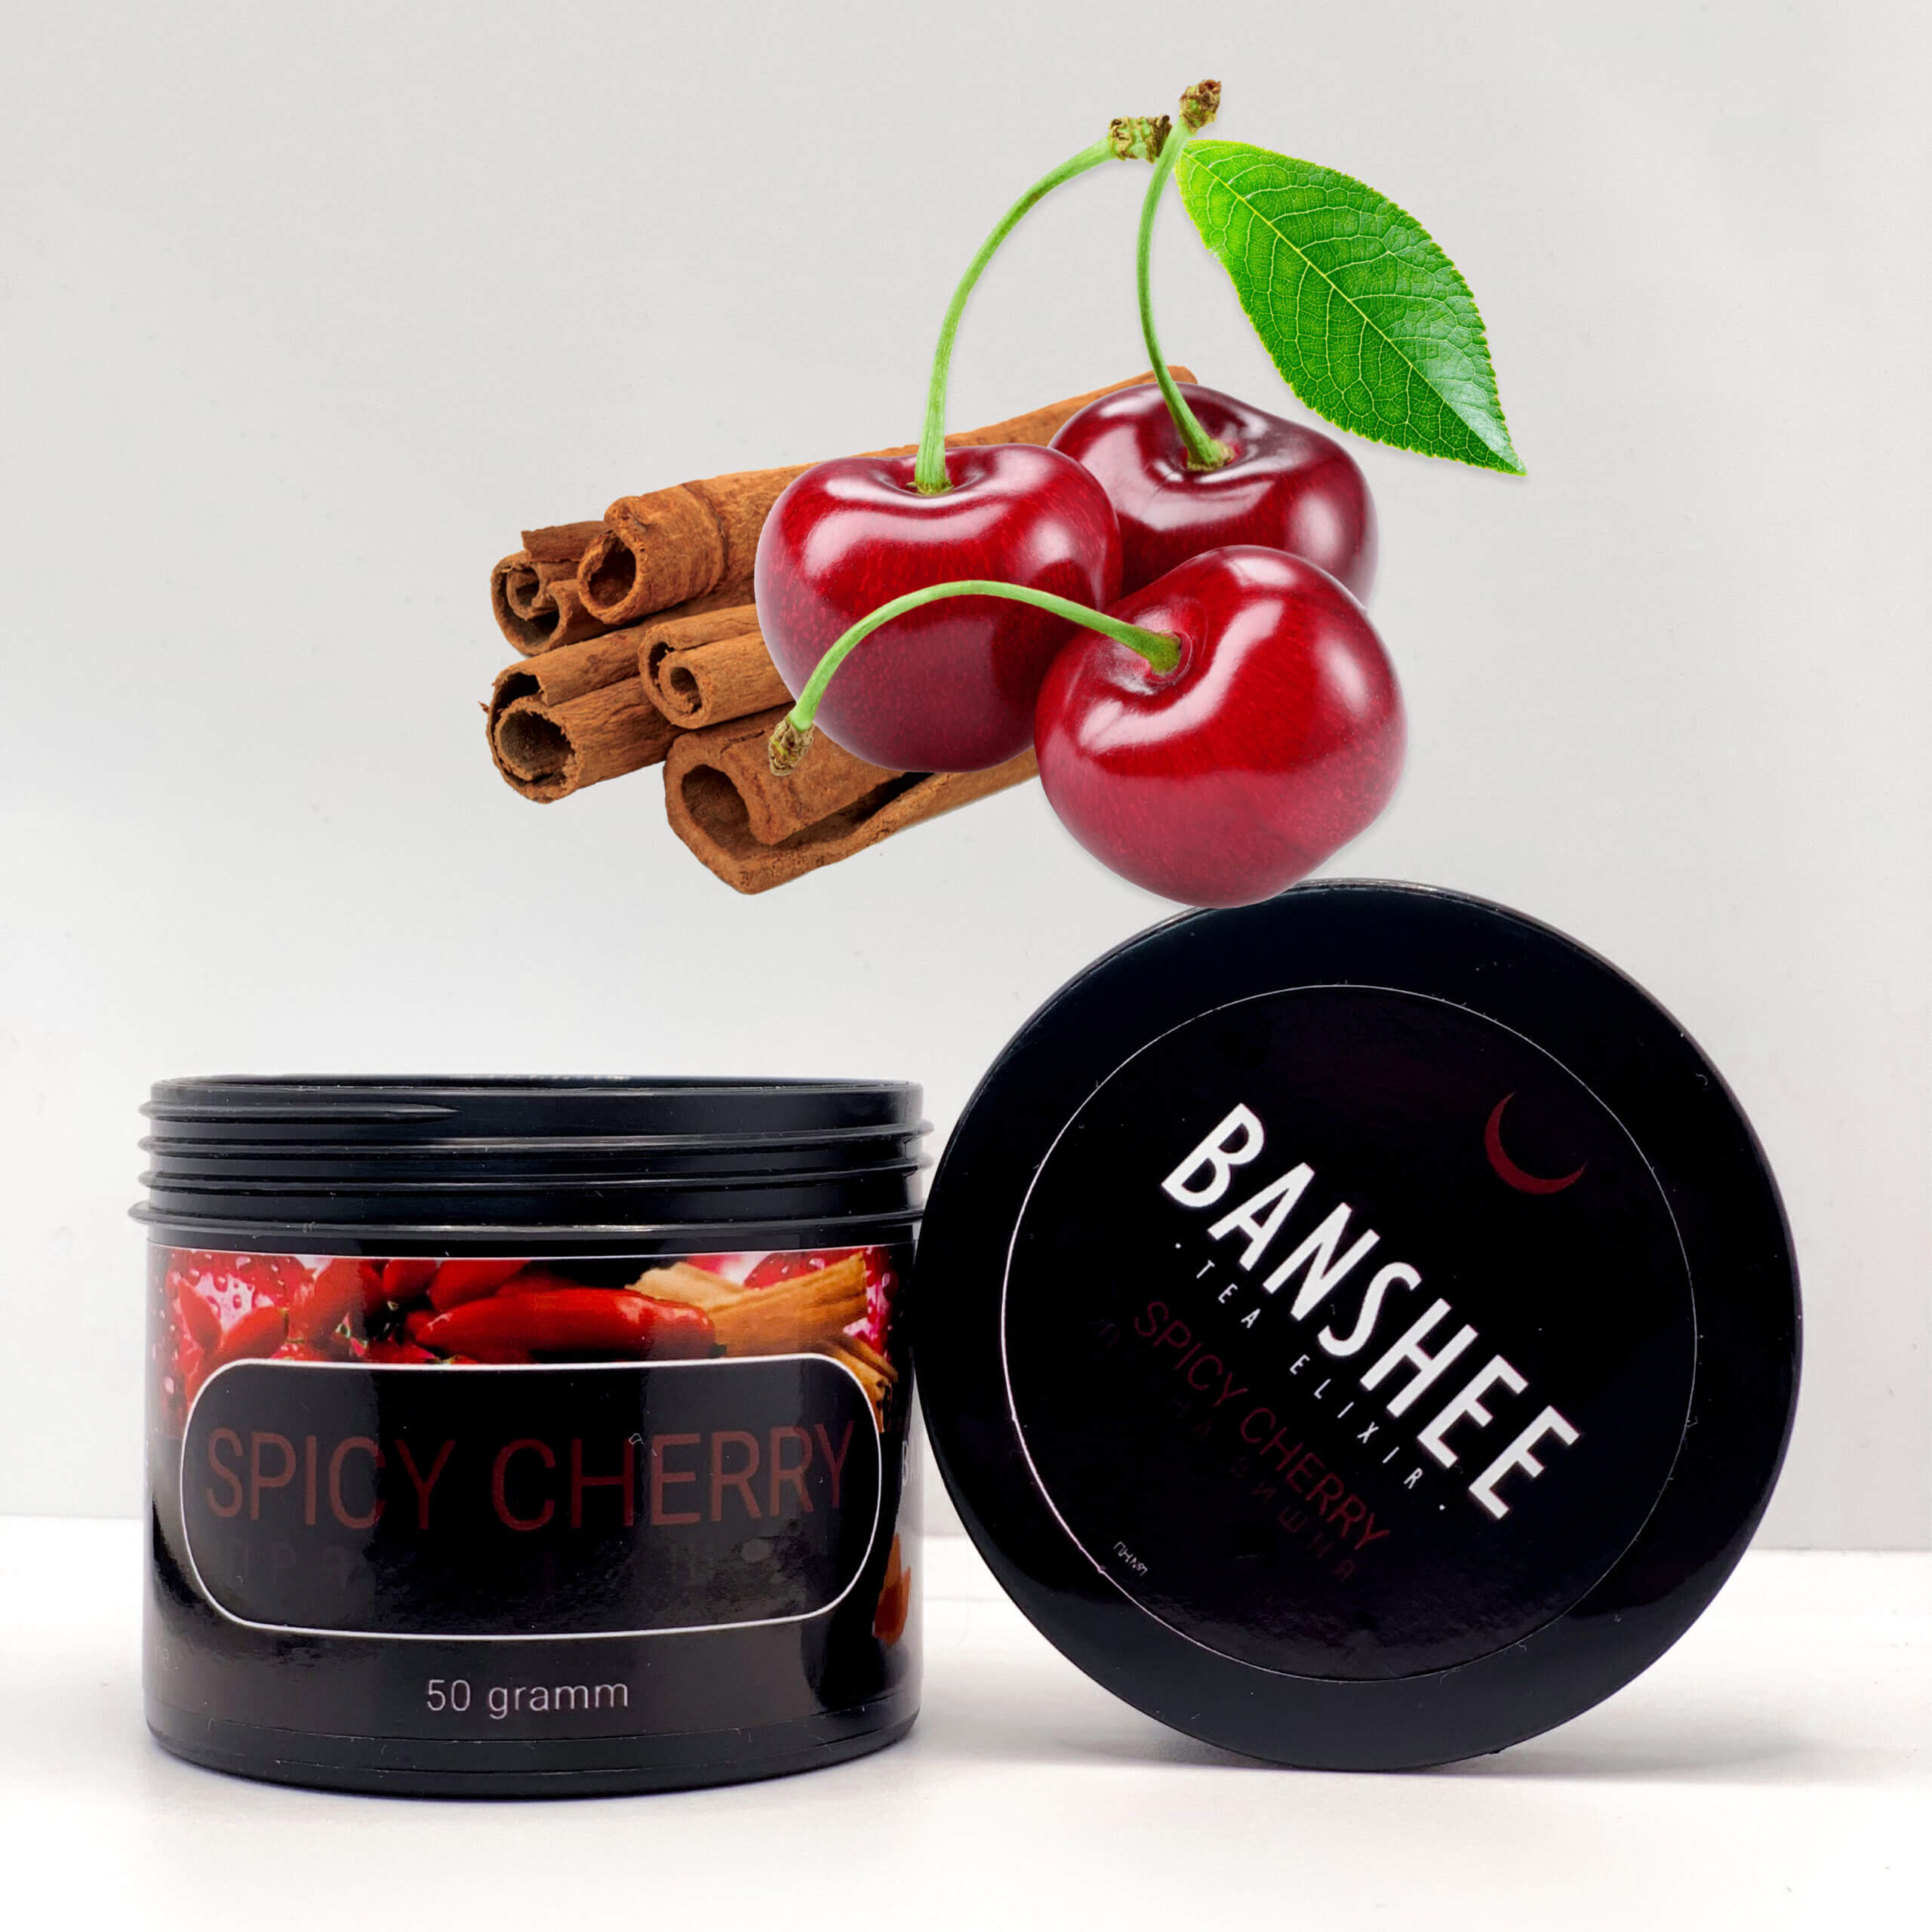 Banshee Dark Spicy Cherry - Пряная вишня